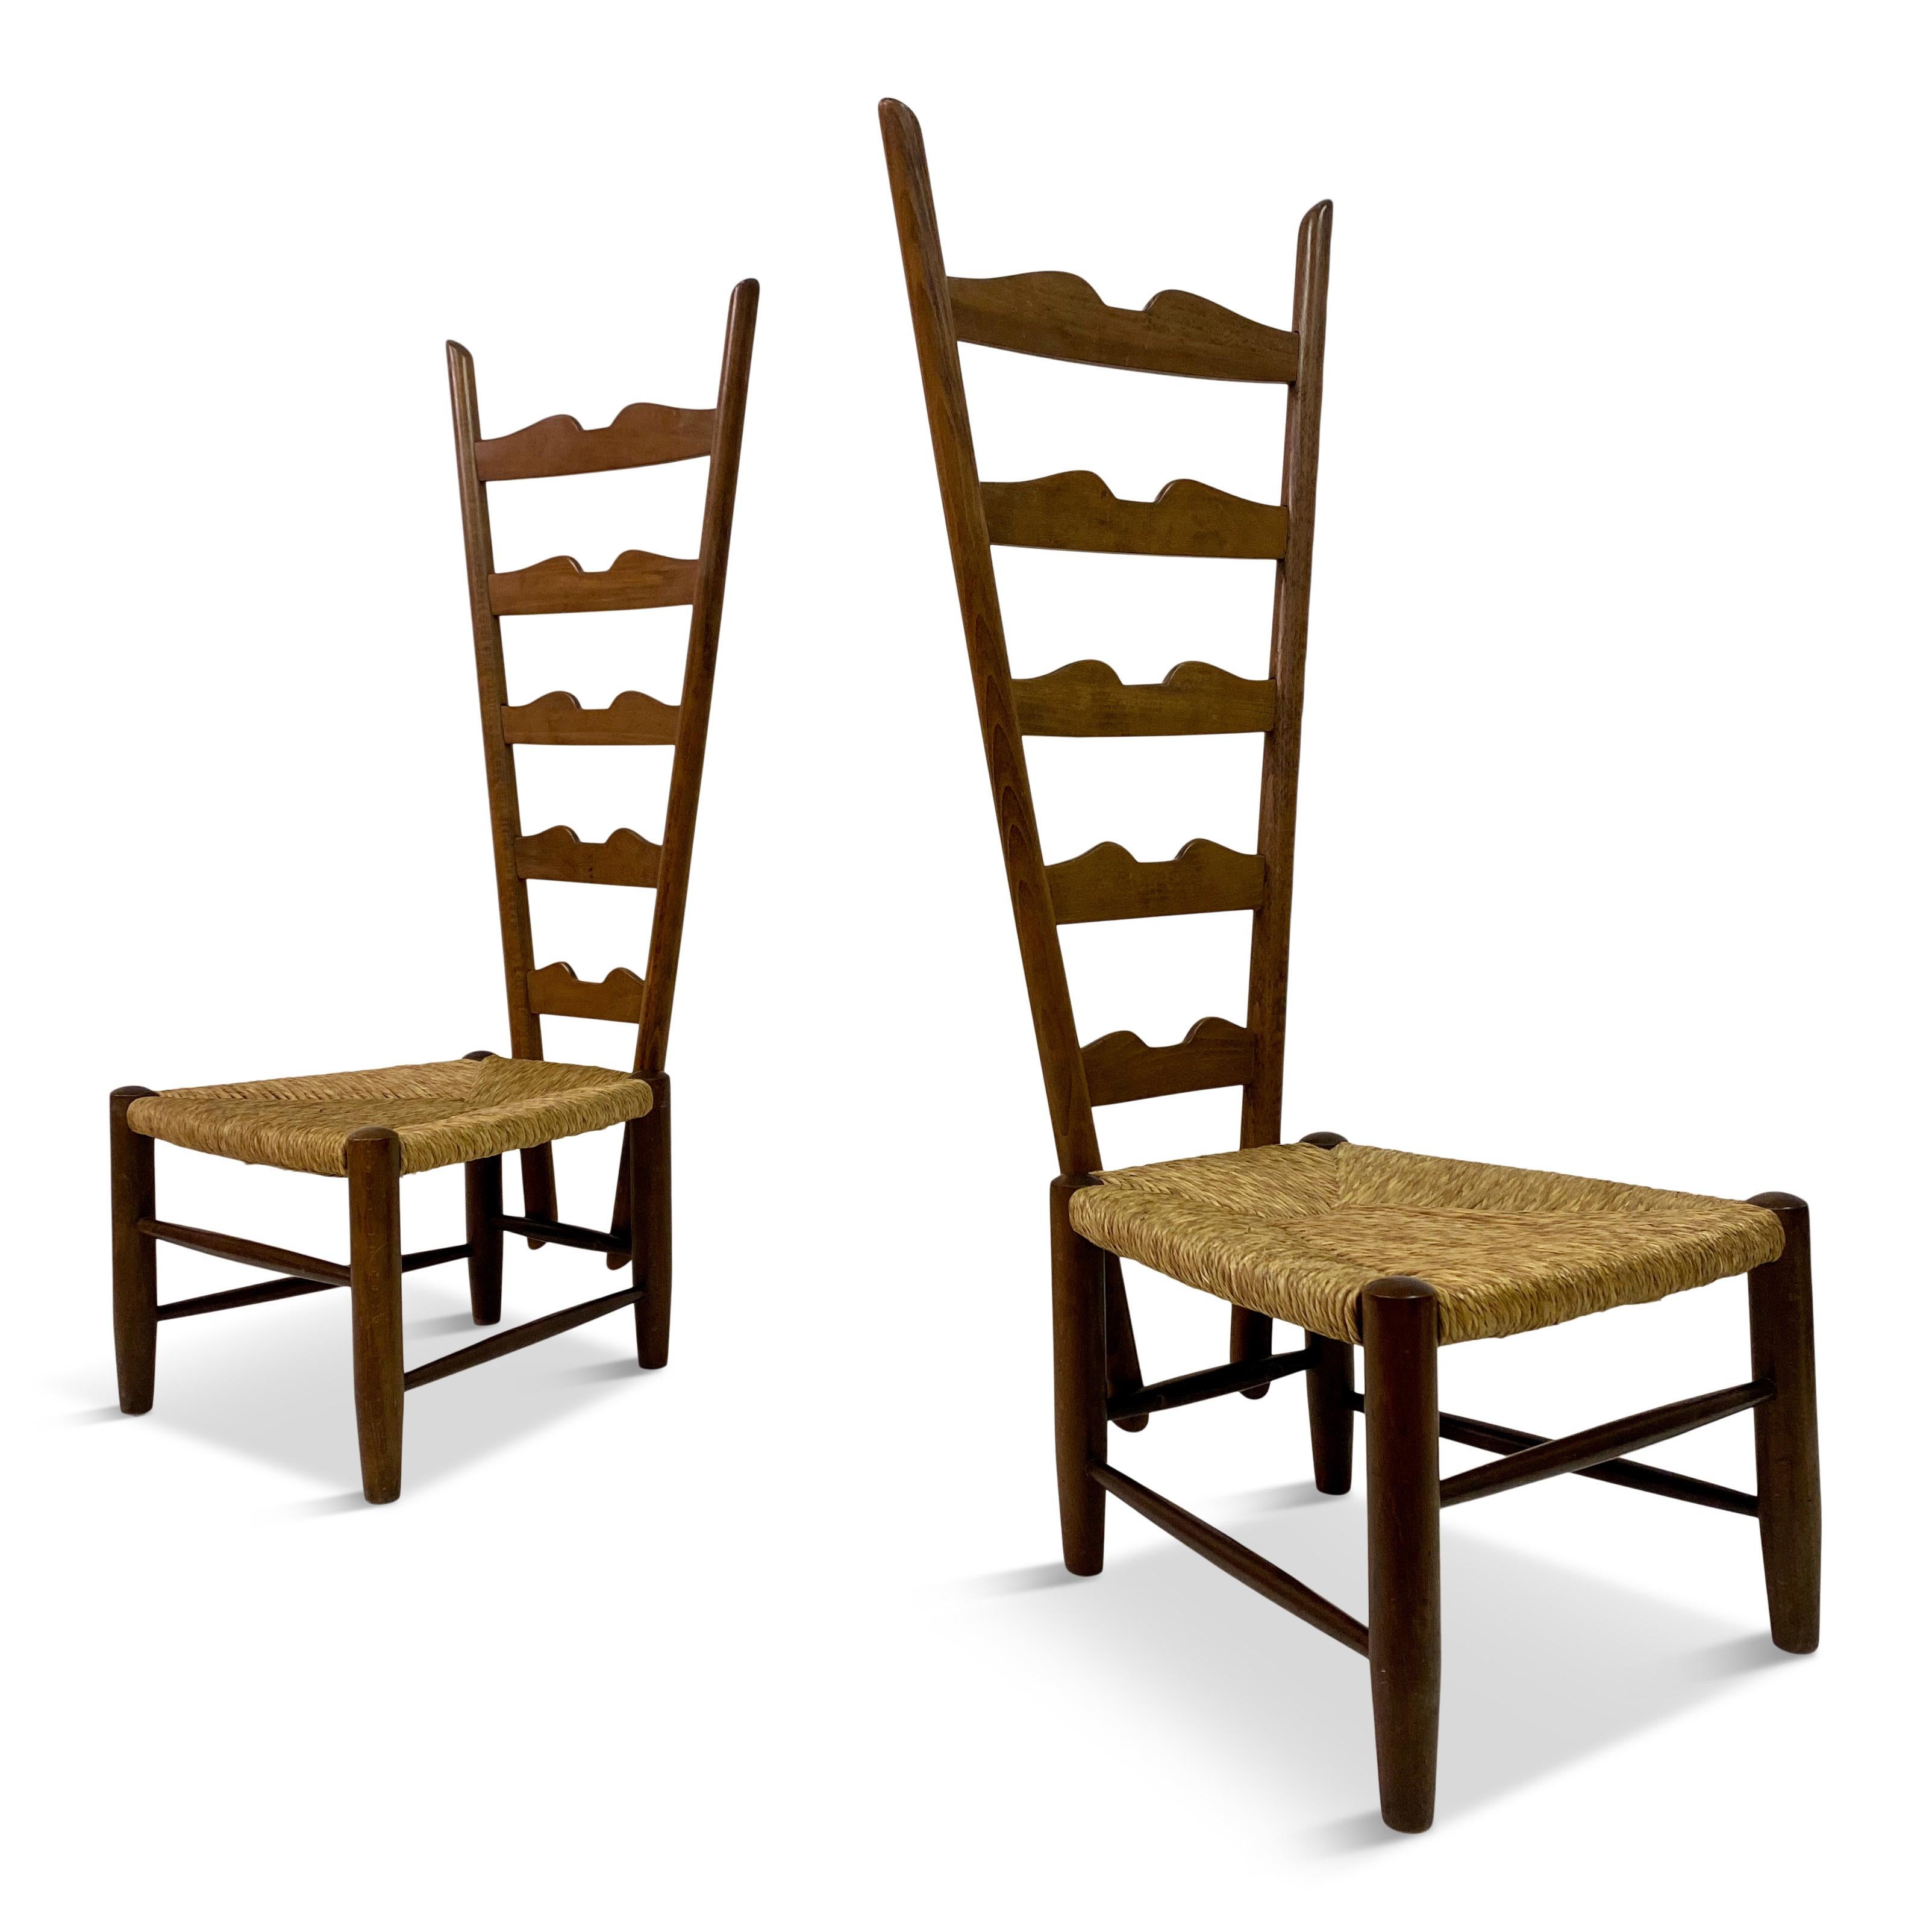 Paar Kaminsessel

Von Gio Ponti

Für Casa e Giardino

Eilige Sitze

Hohe Rückenlehnen

Sitzhöhe 30cm

Italien Mitte des 20. Jahrhunderts.